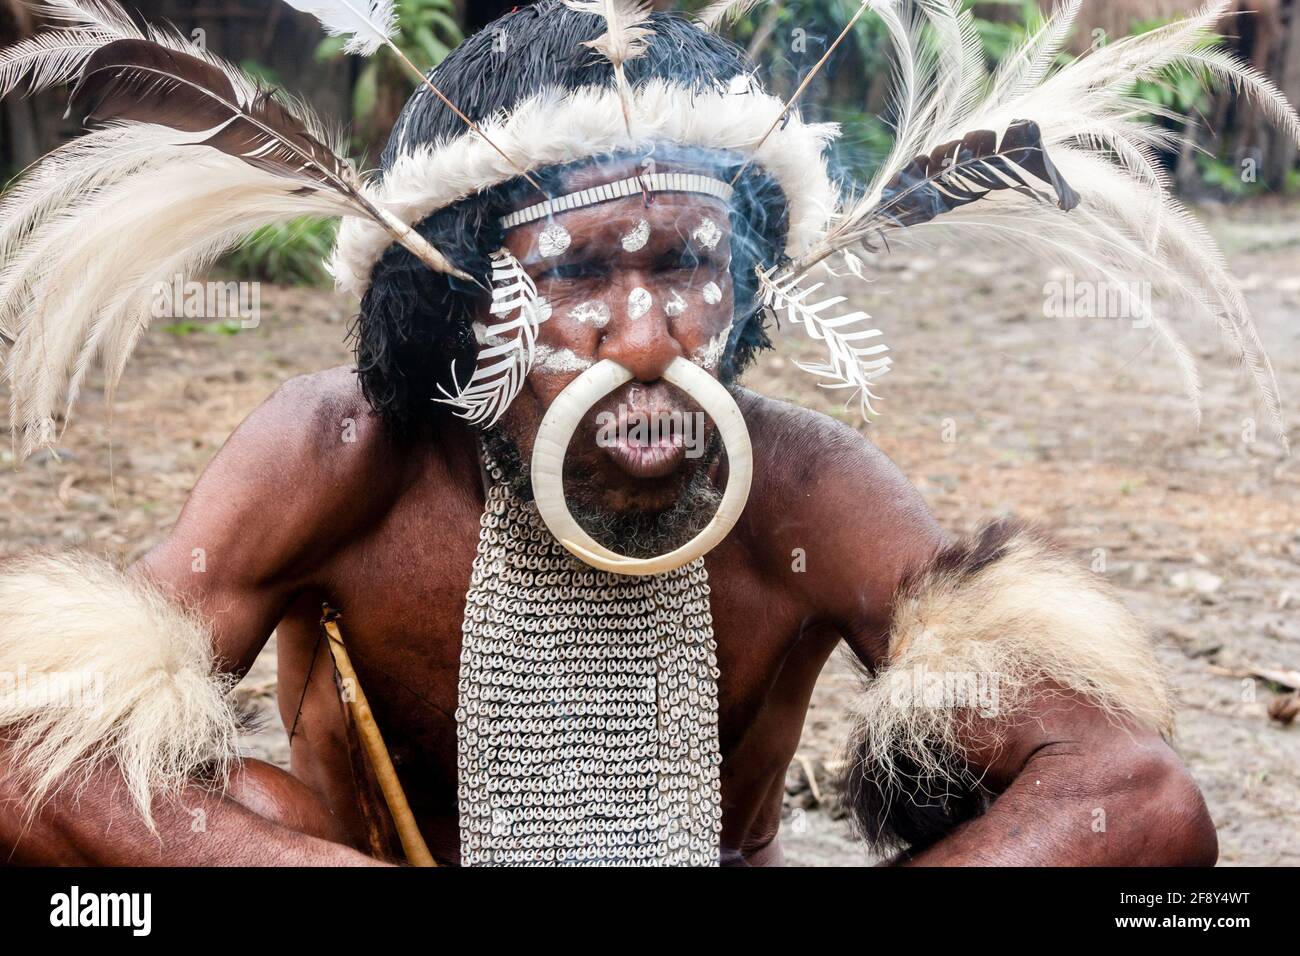 Wamena, Indonesien - 9. Januar 2010: Das Oberhaupt des Dani-Stammes im Dorf Dugum Dani, Irian Jaya, Indonesisches Neuguinea Stockfoto